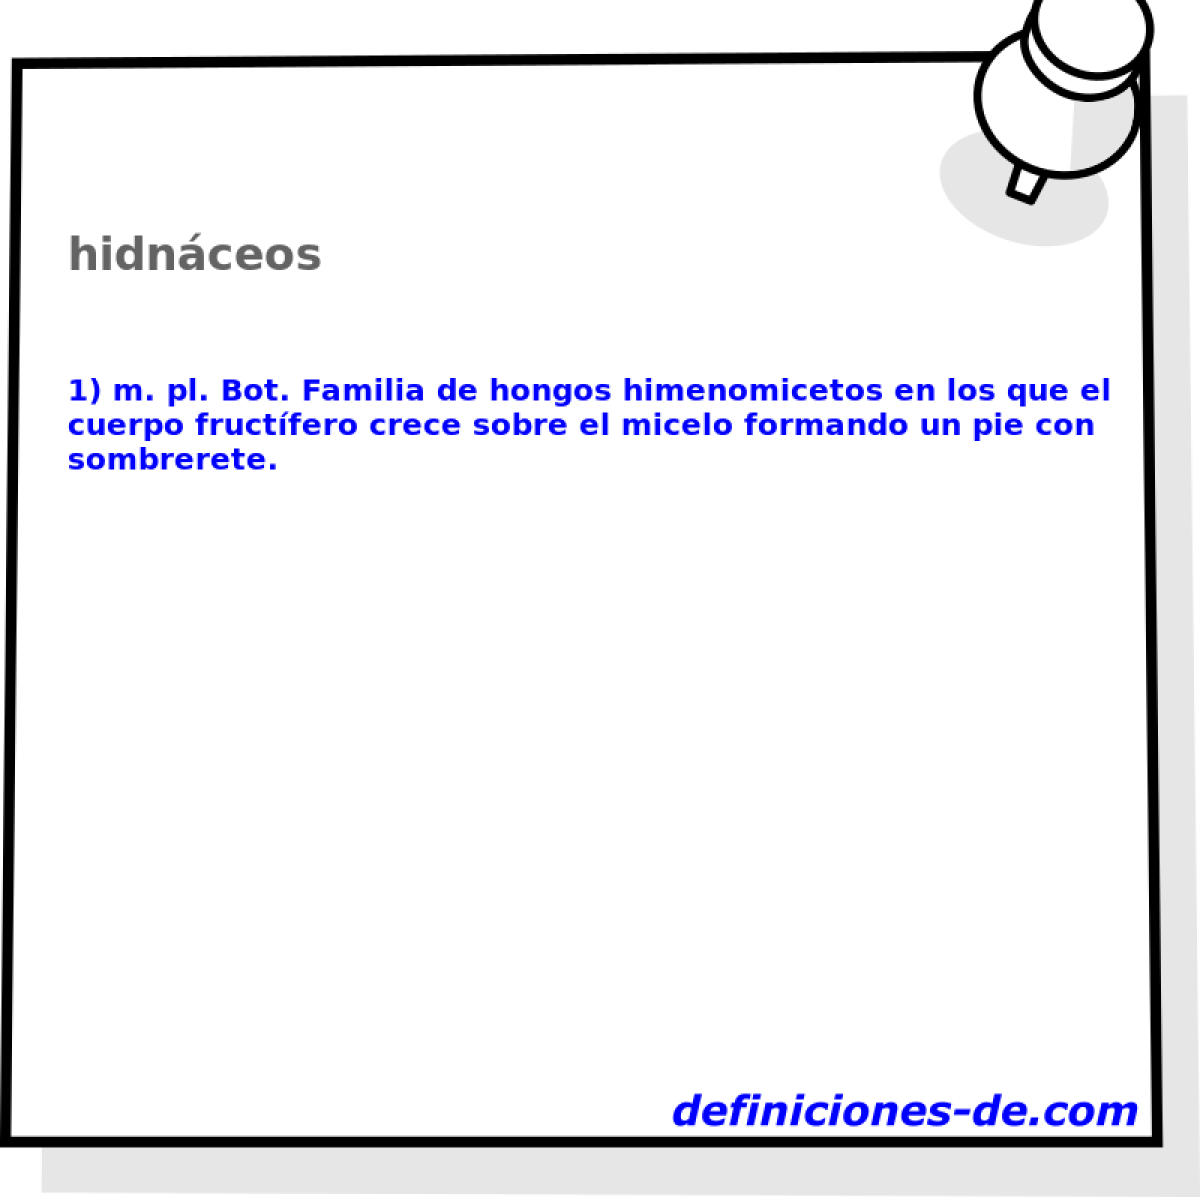 hidnceos 